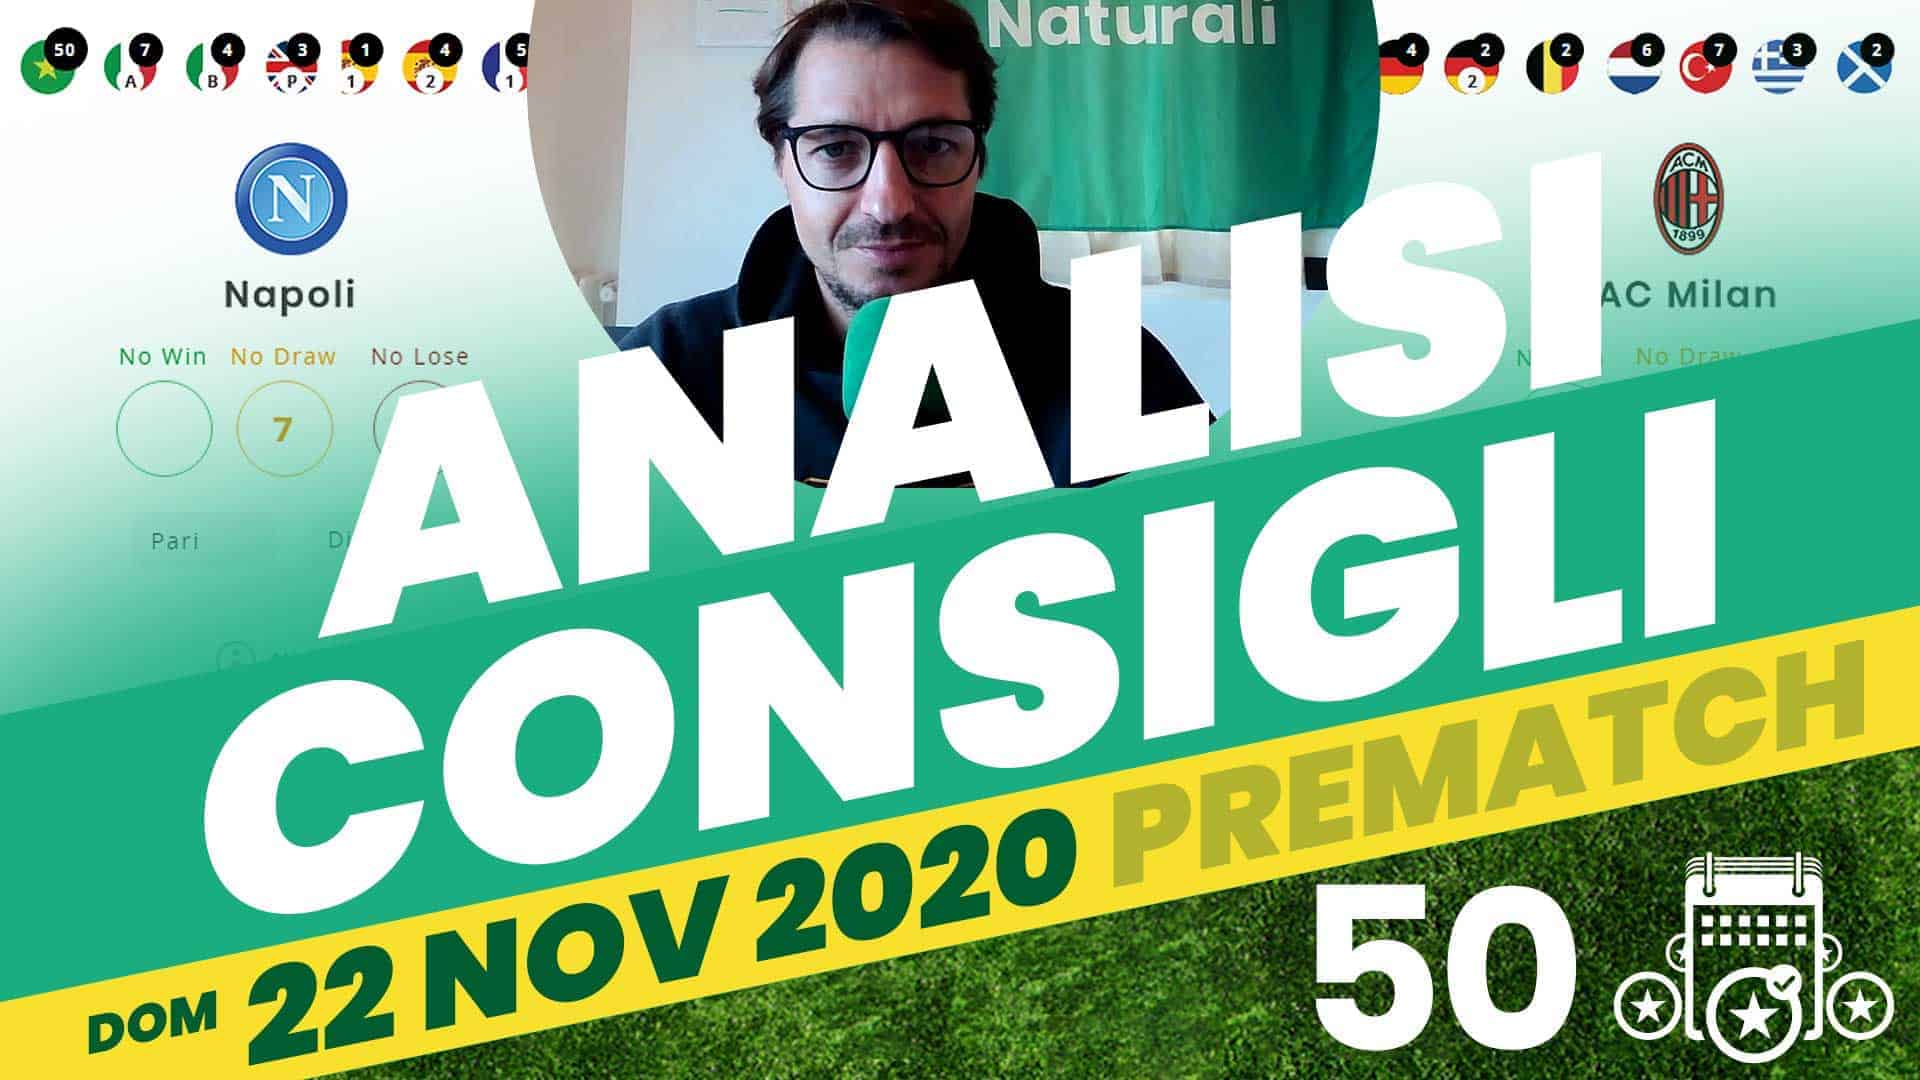 Pronostici Naturali Video Analisi Scommesse Betting Calcio Pre Partite Domenica 22 Nov 2020